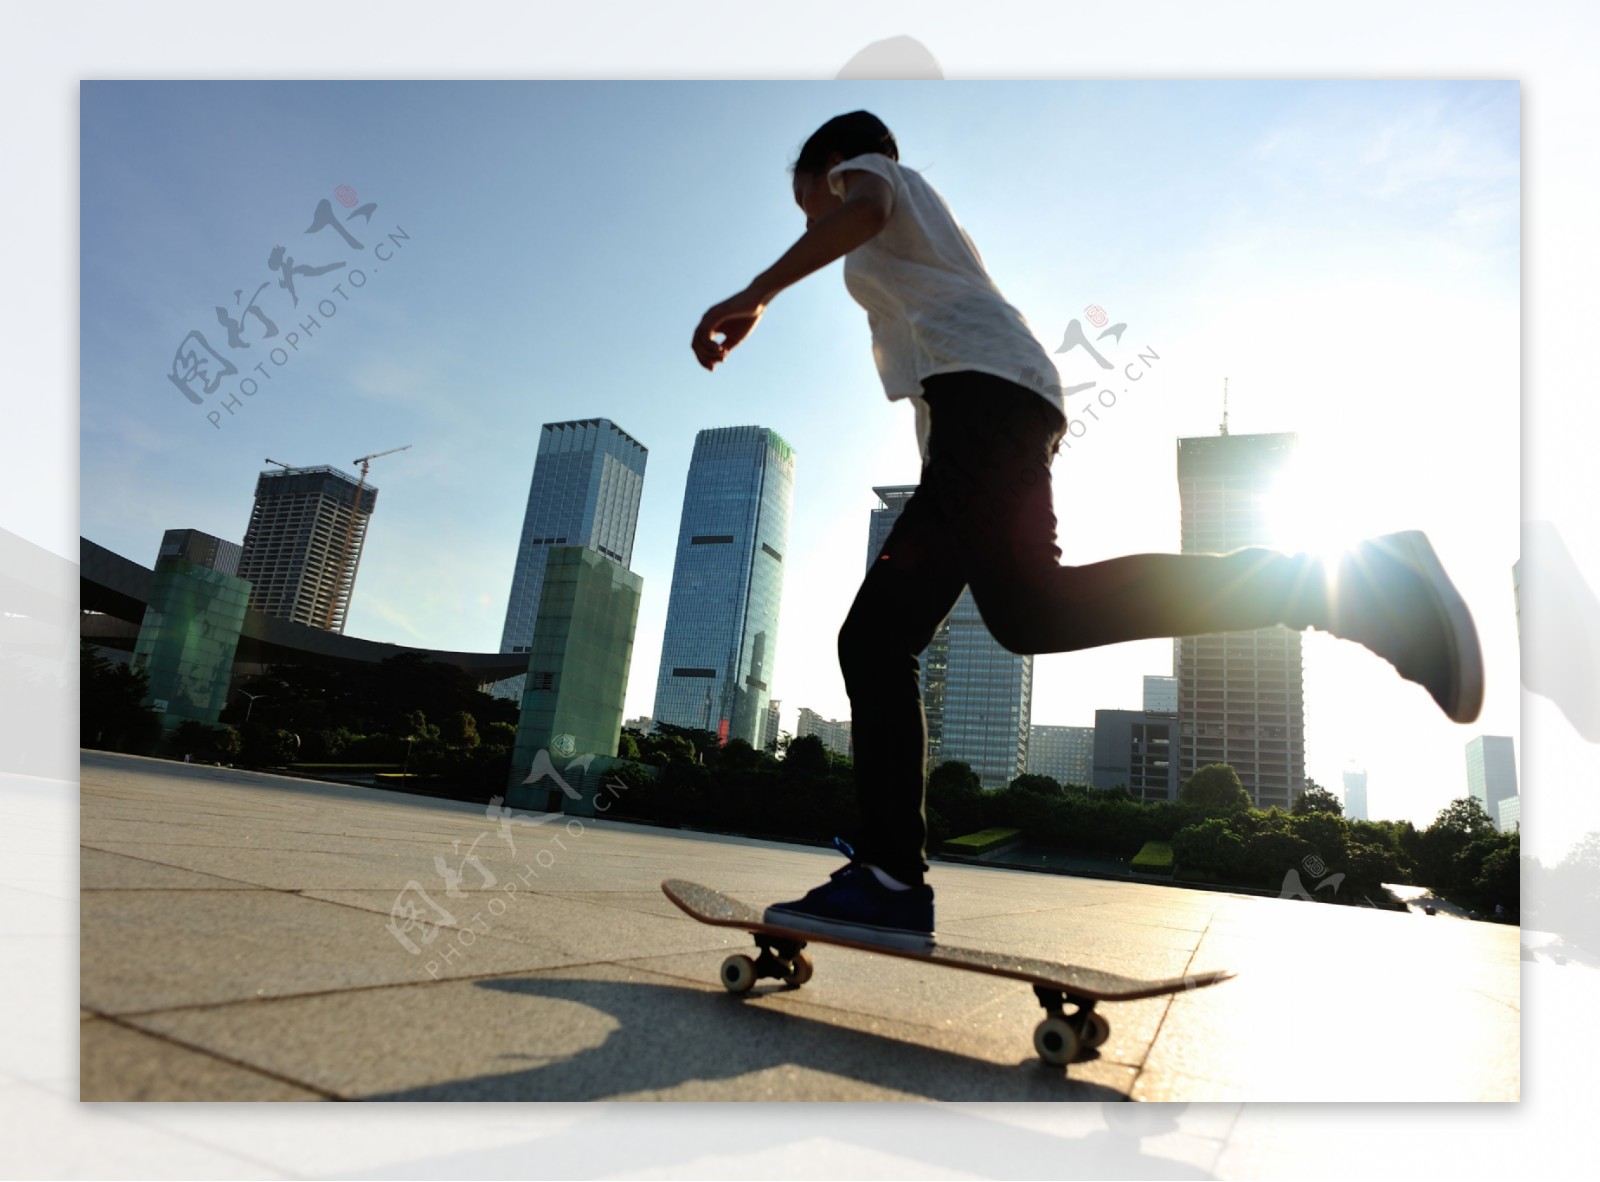 广场上玩滑板的青年图片